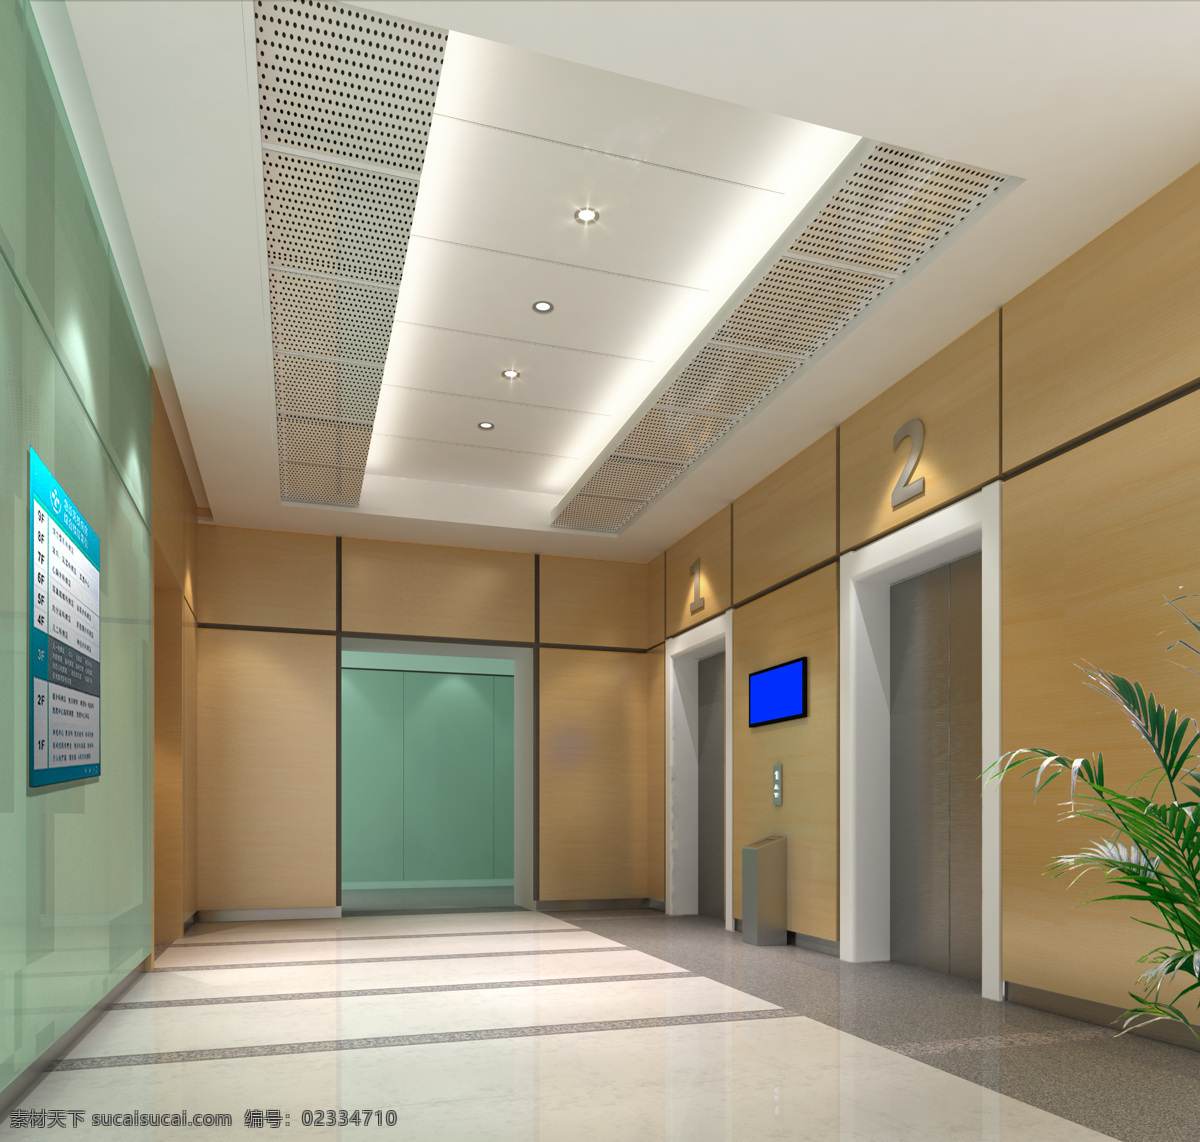 电梯厅效果图 电梯厅 医院 效果图 木饰面 玻璃 植物 3d作品 3d设计